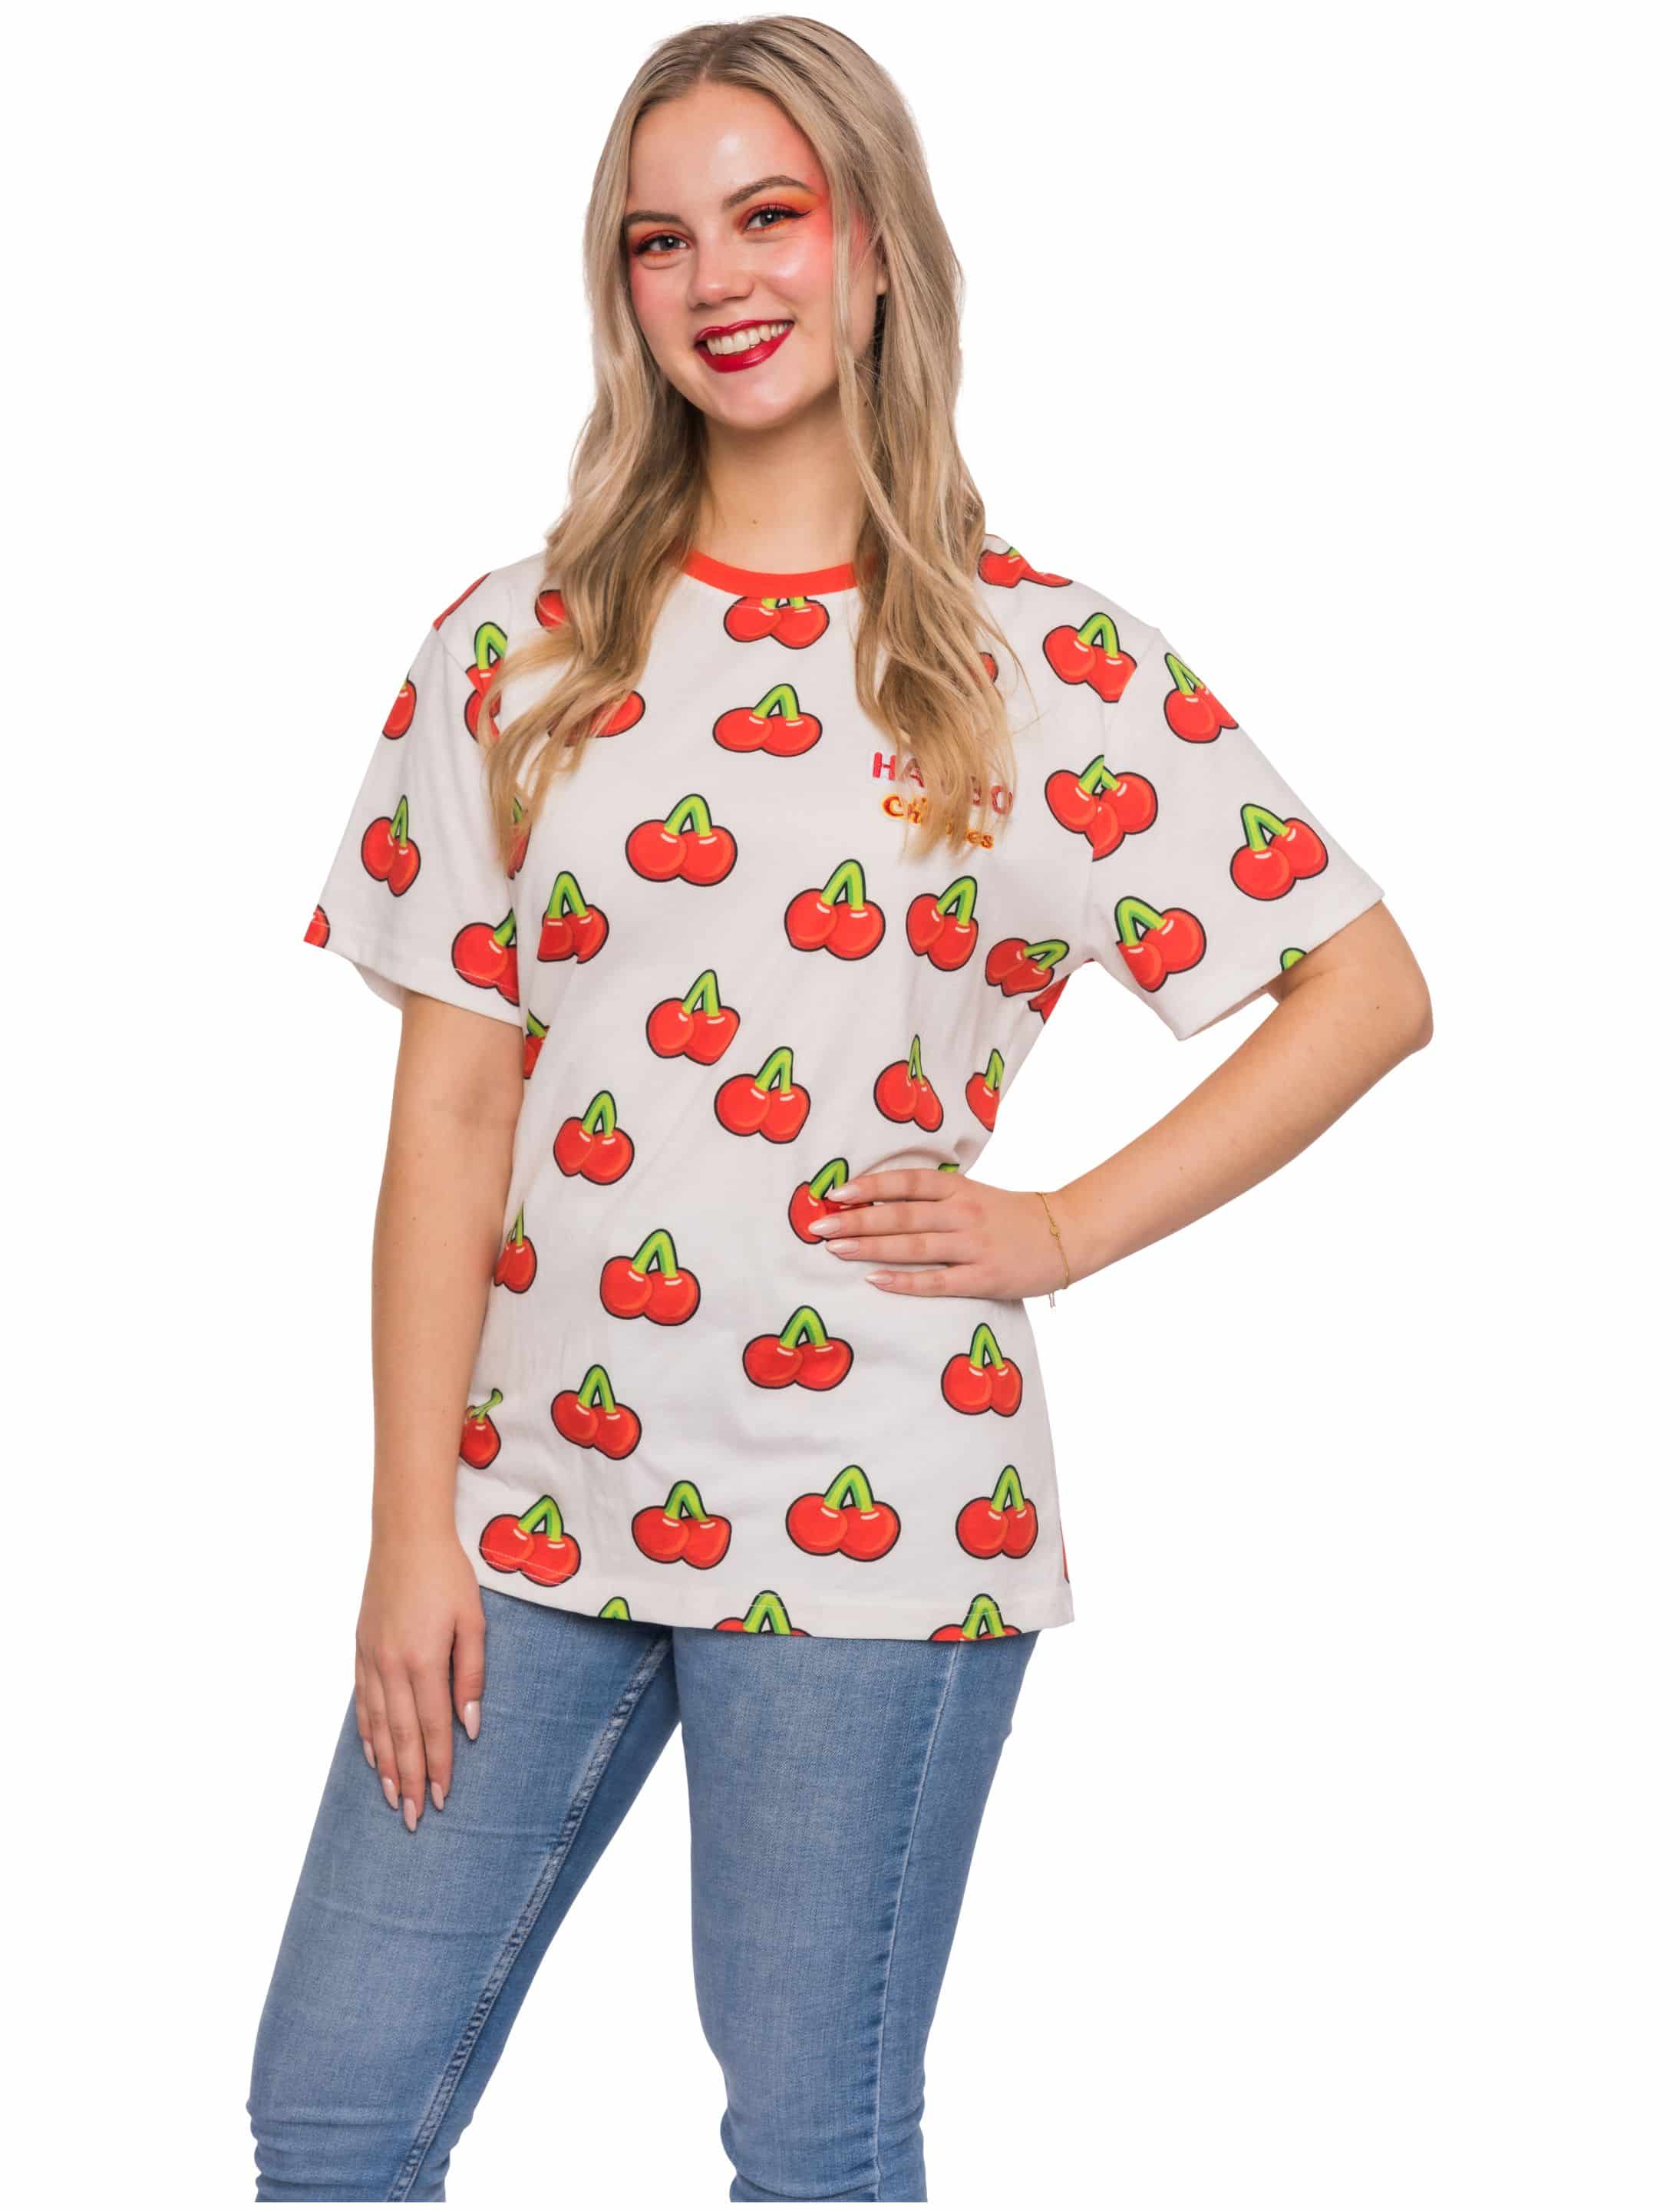 T-Shirt HARIBO Happy Cherries Unisex weiß/rot S